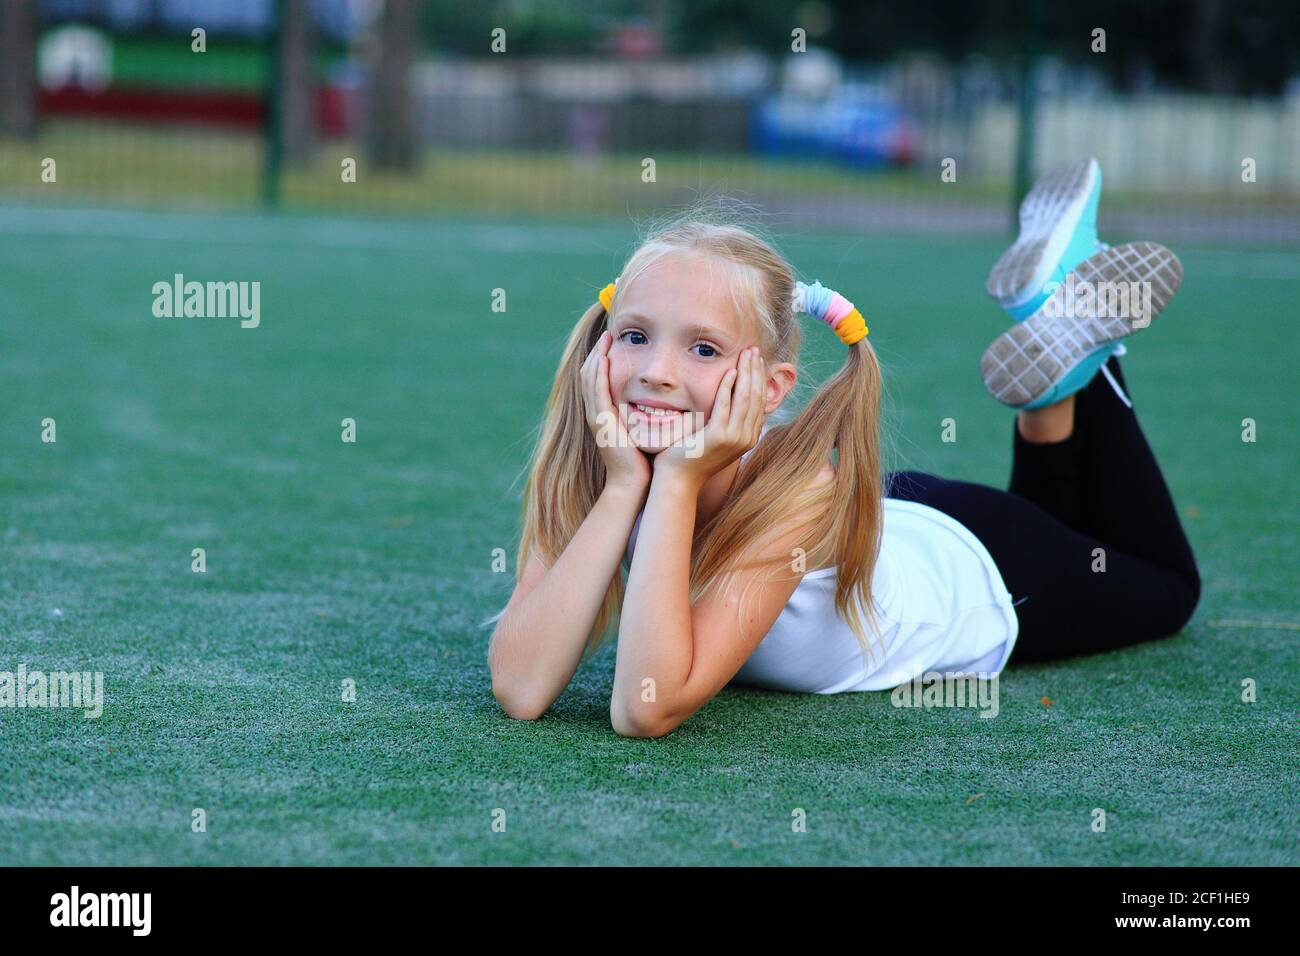 Une fille posant près d'un but de football sur un terrain de sport. Banque D'Images